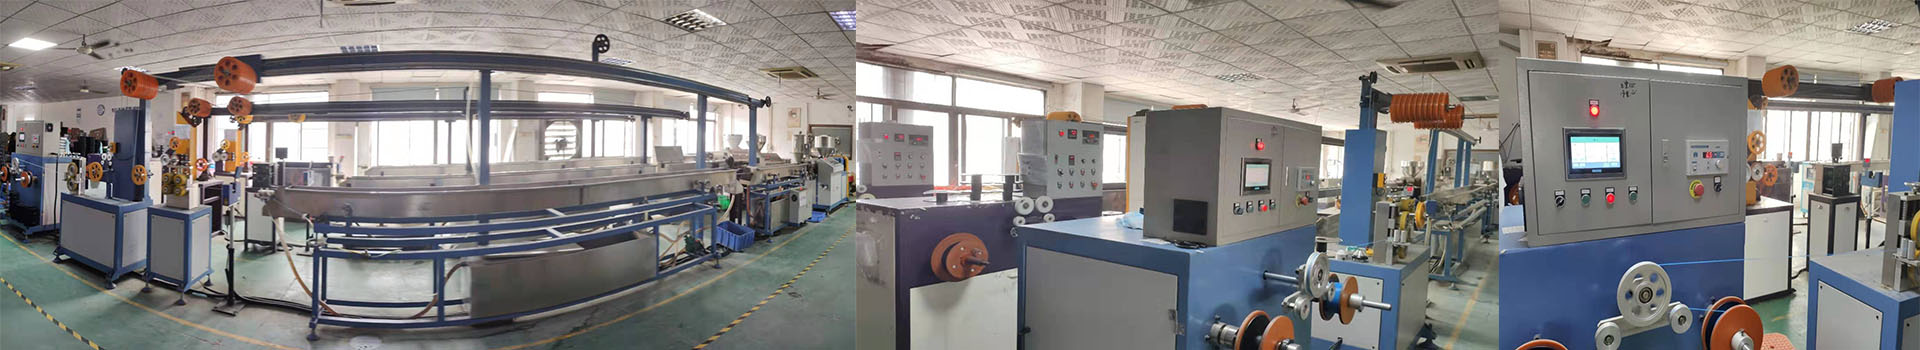 Shenzhen Anet Technology Co., Ltd